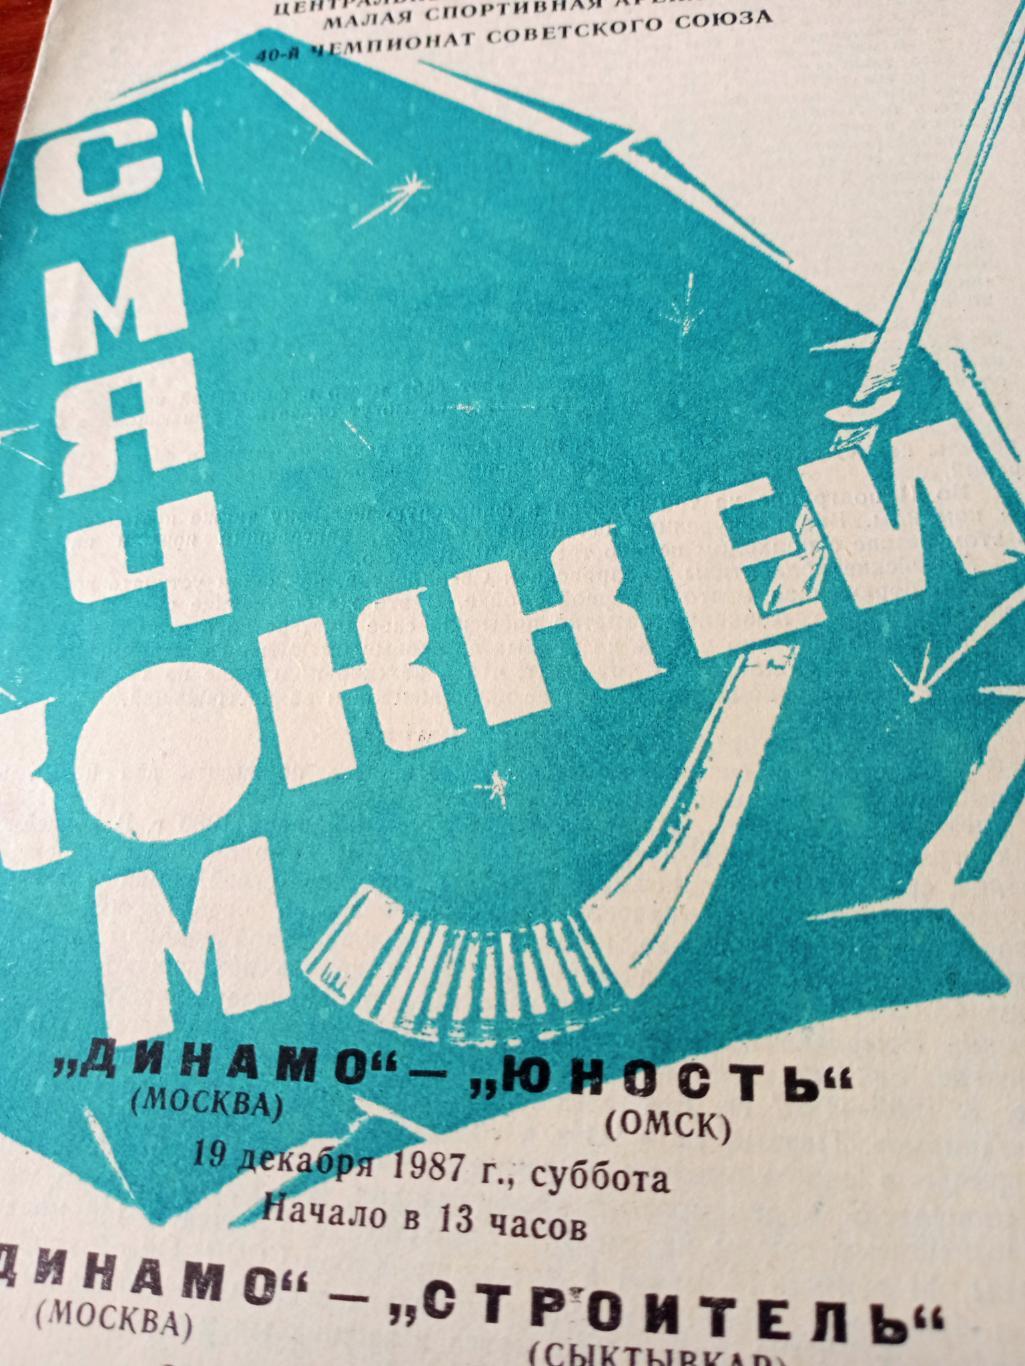 Динамо Москва, 1987 год. Матчи - Юность, Строитель (19 и 21.12)